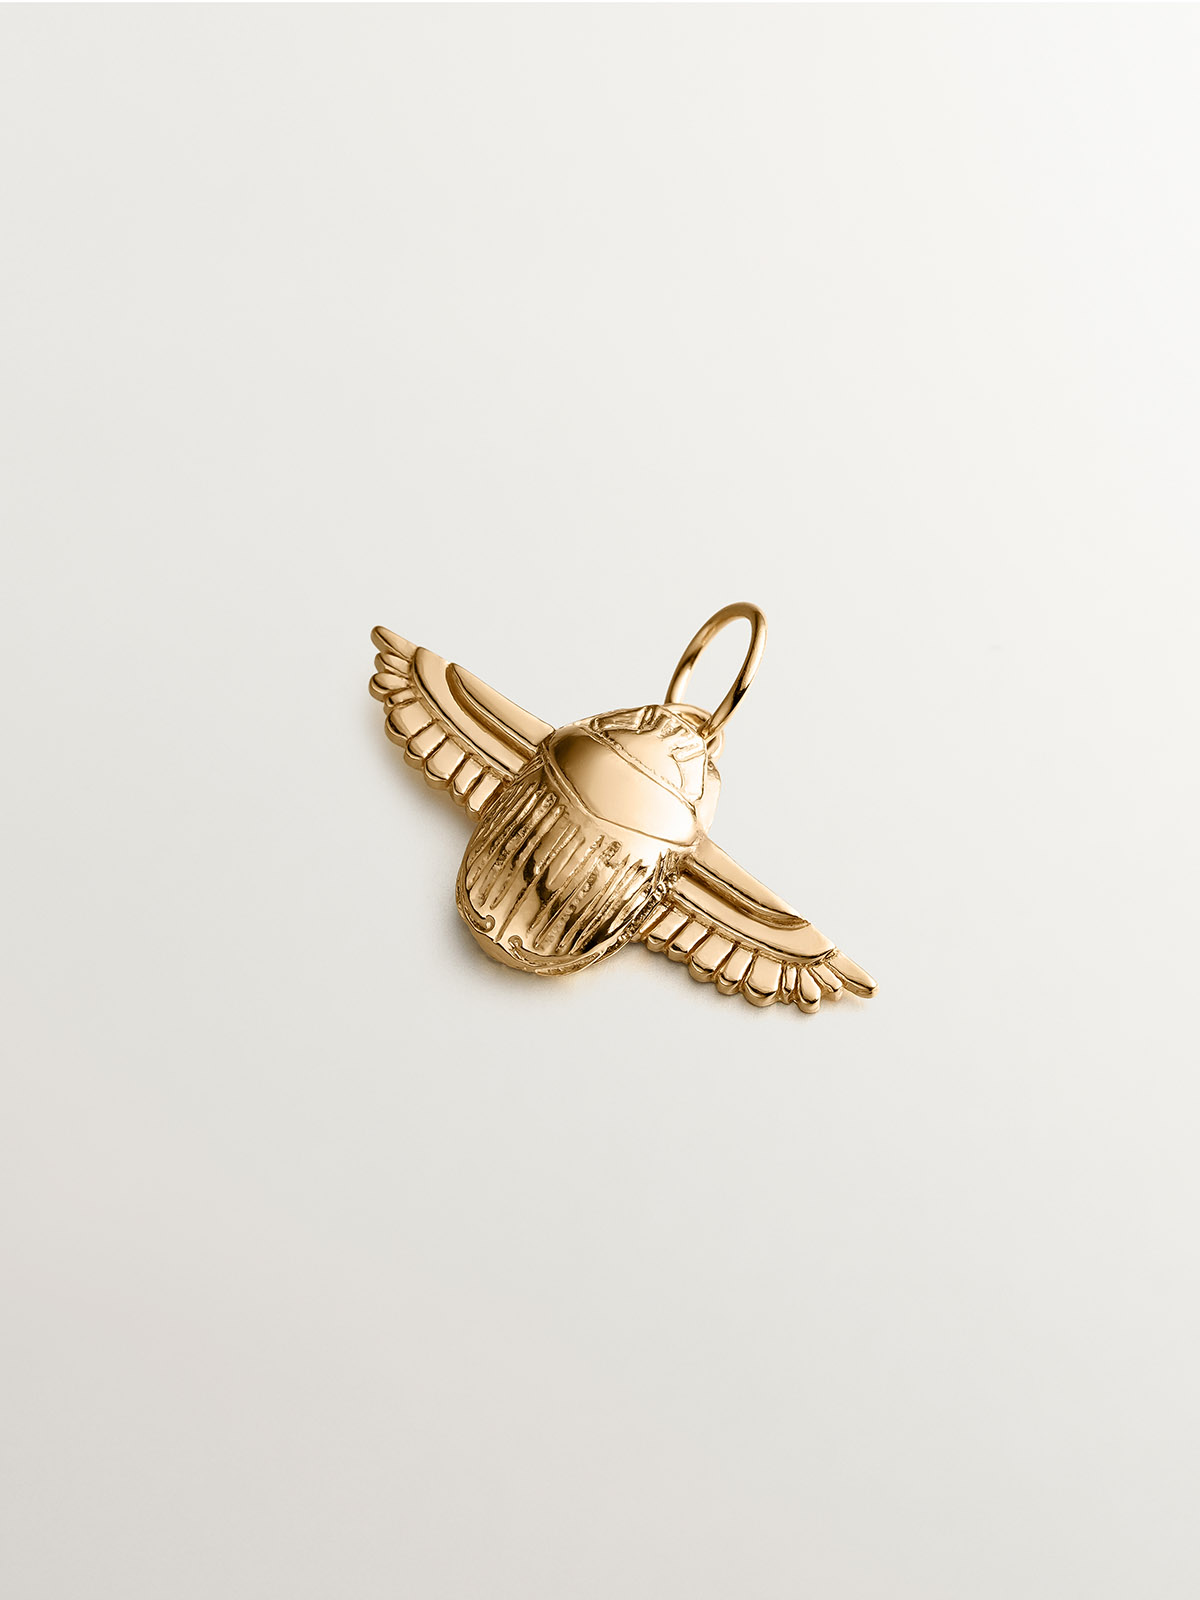 Charm de plata 925 bañada en oro amarillo de 18K con escarabajo egipcio